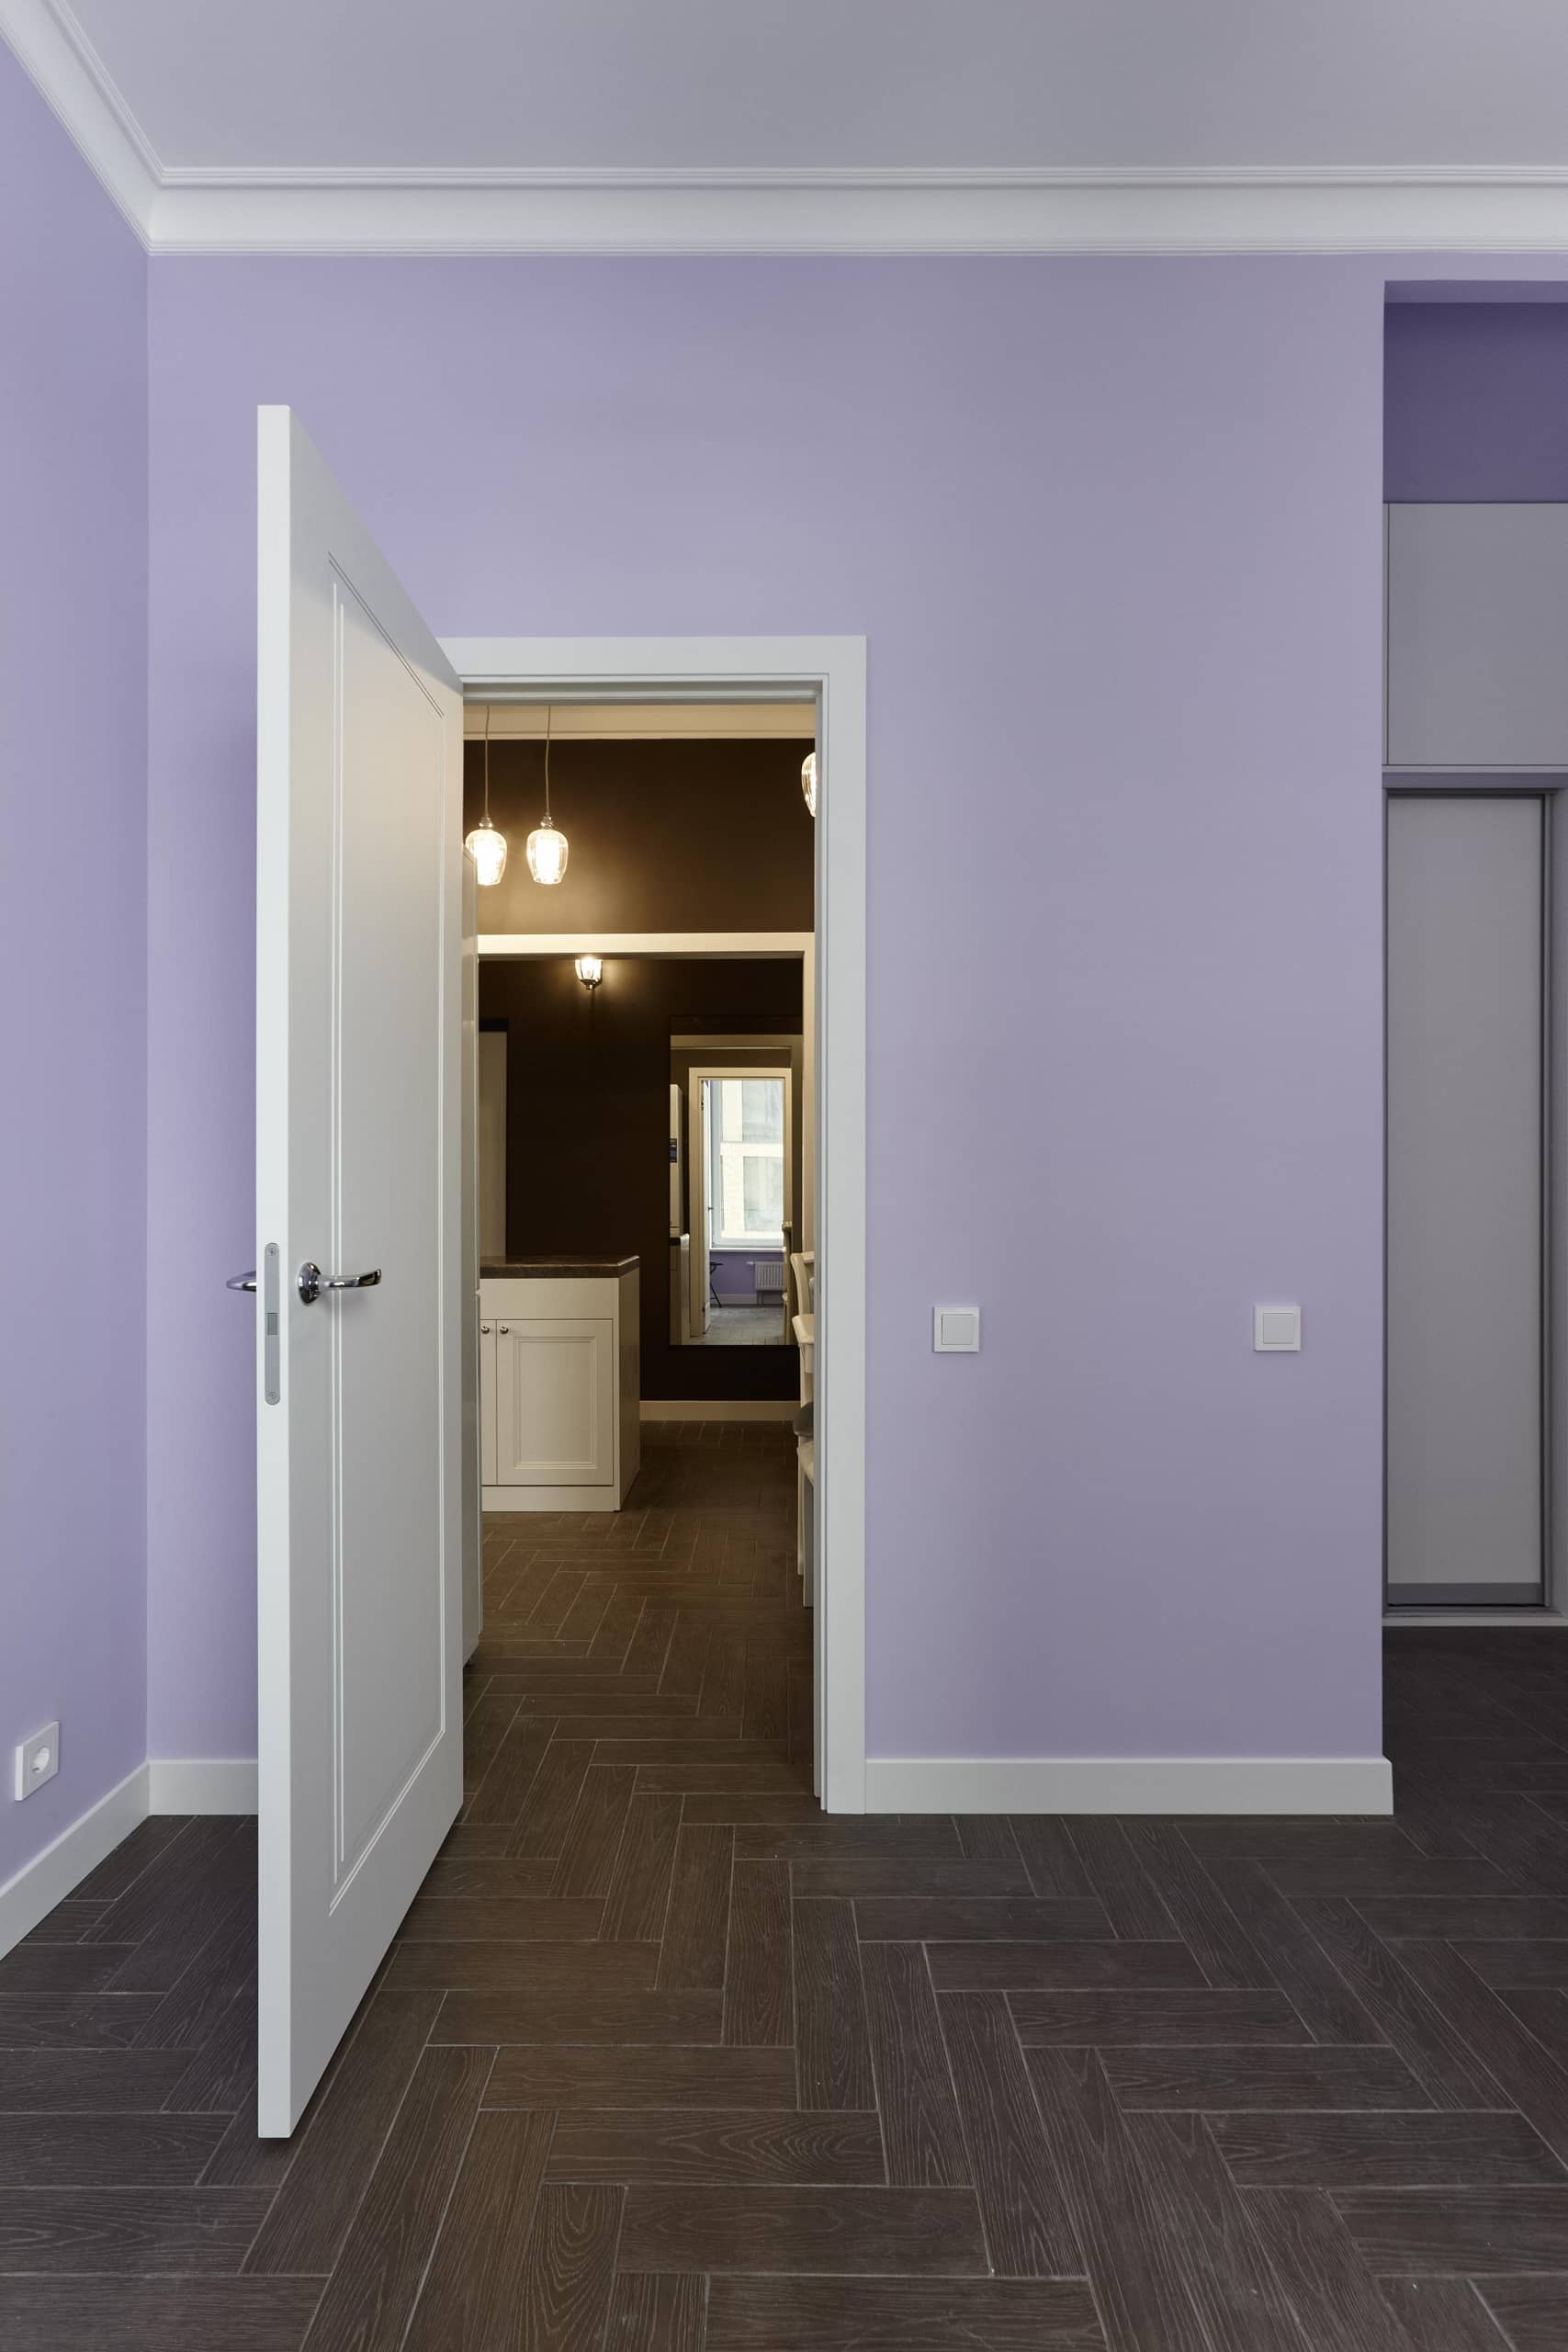 Оформление интерьера в фиолетовый цвет. Фото № 68533.